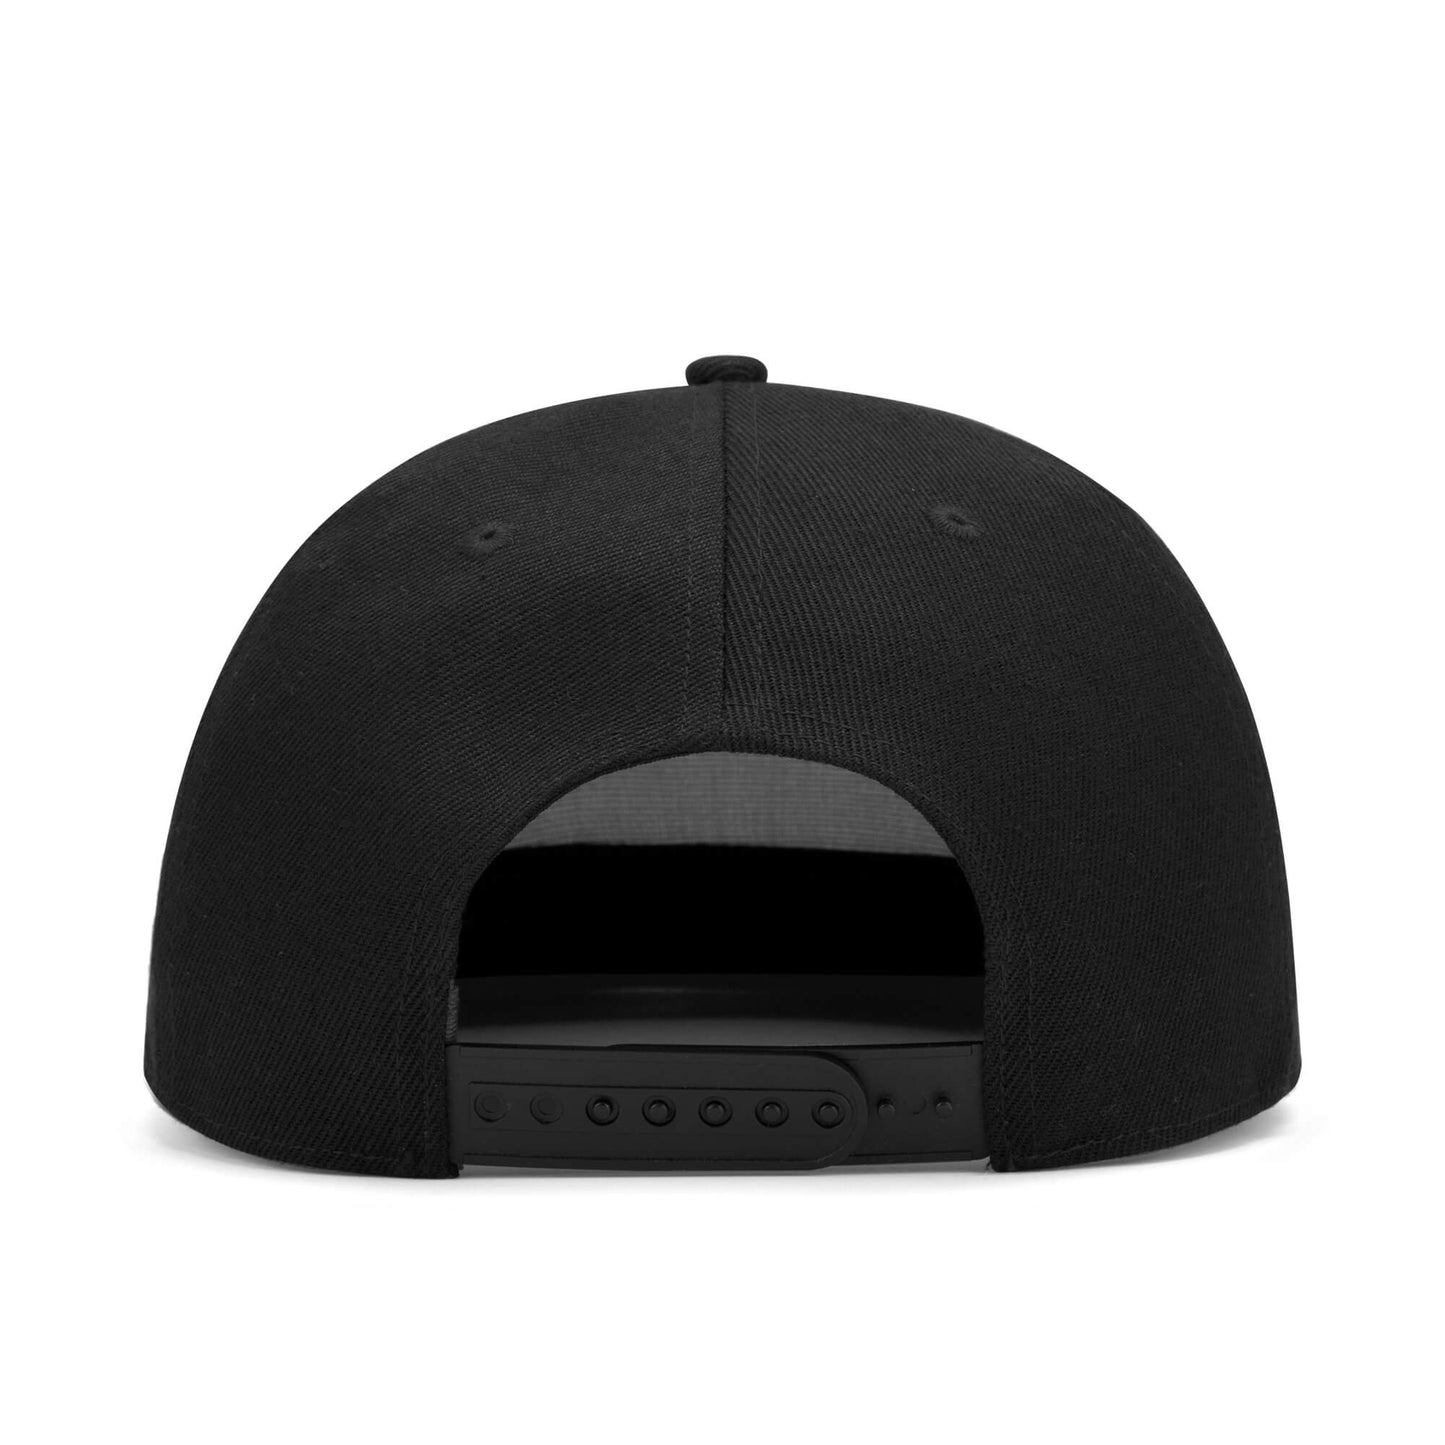 Dorman Cavs Casual Hip-hop Hats